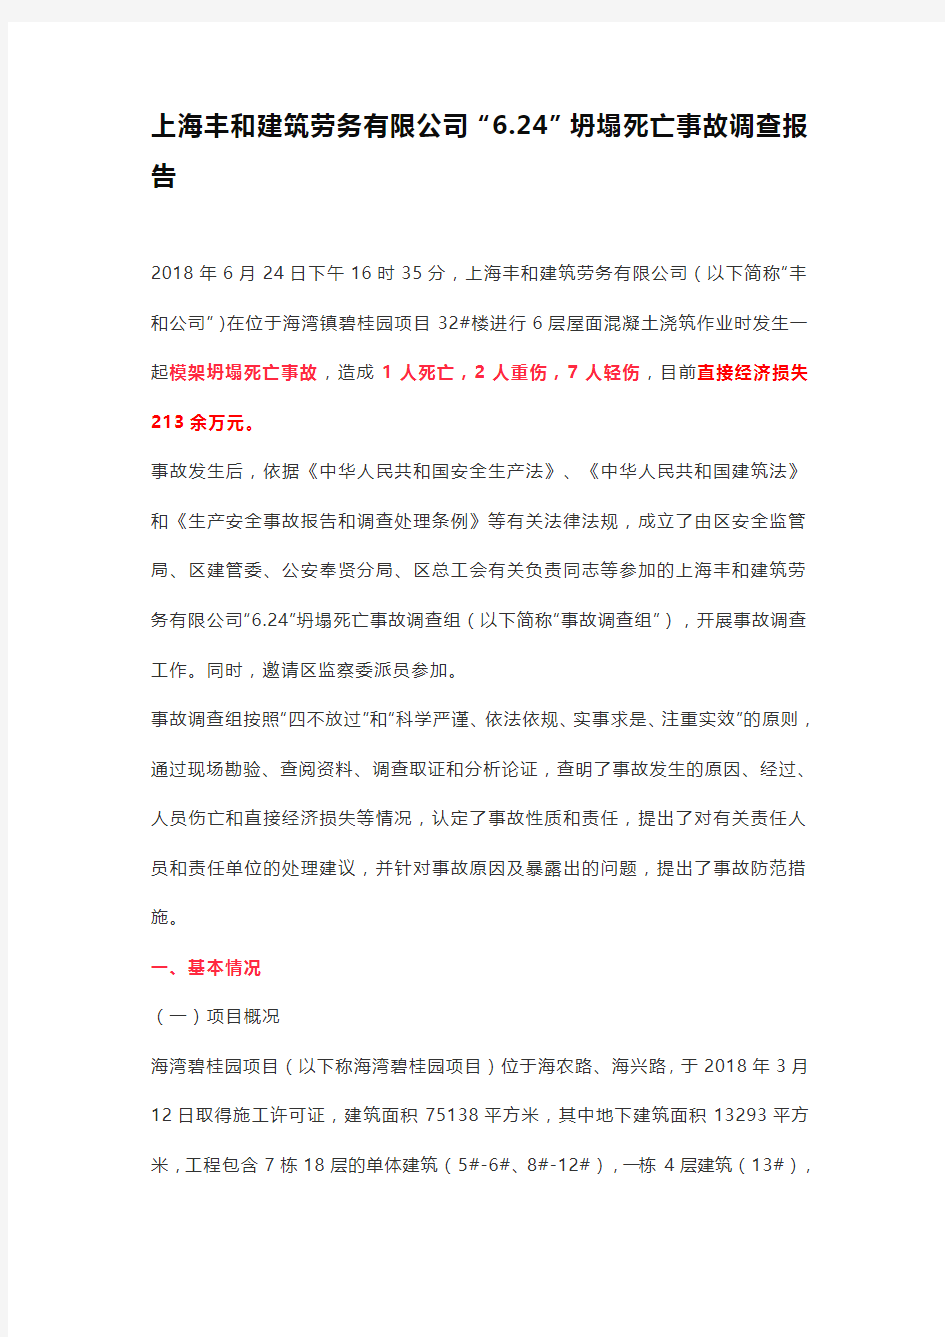 上海丰和建筑劳务有限公司“6.24”坍塌死亡事故调查报告